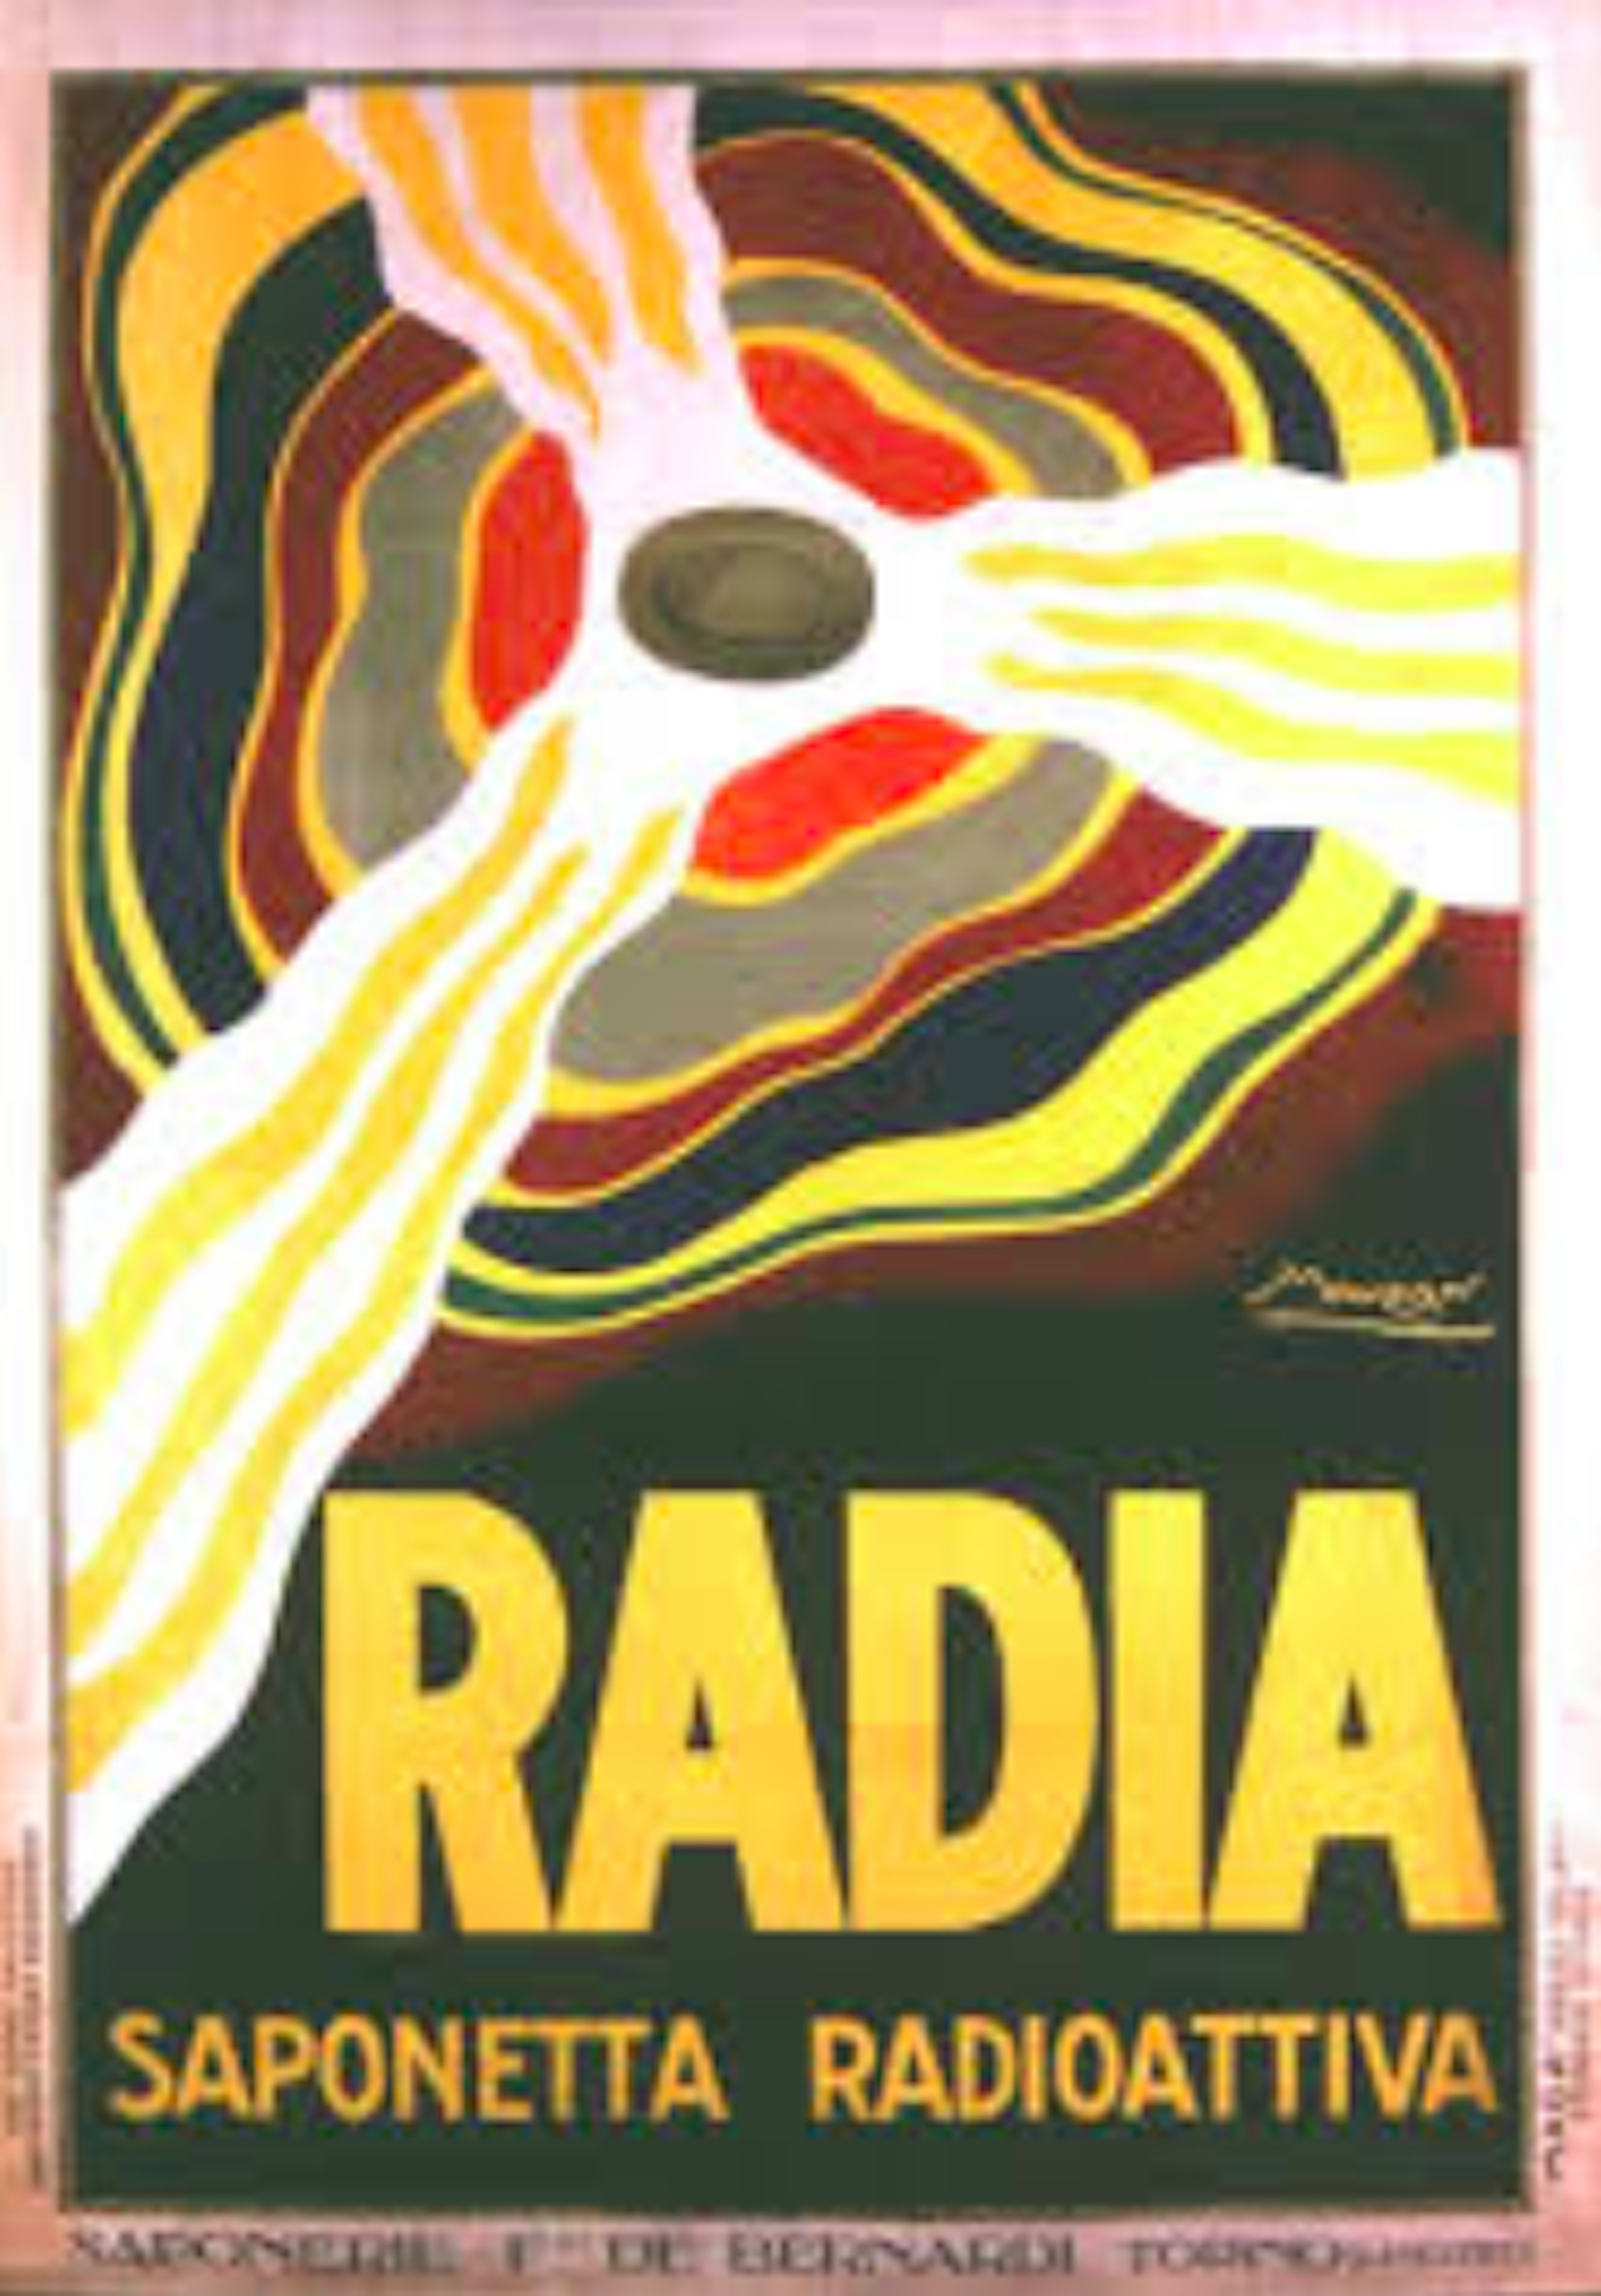 radium uses